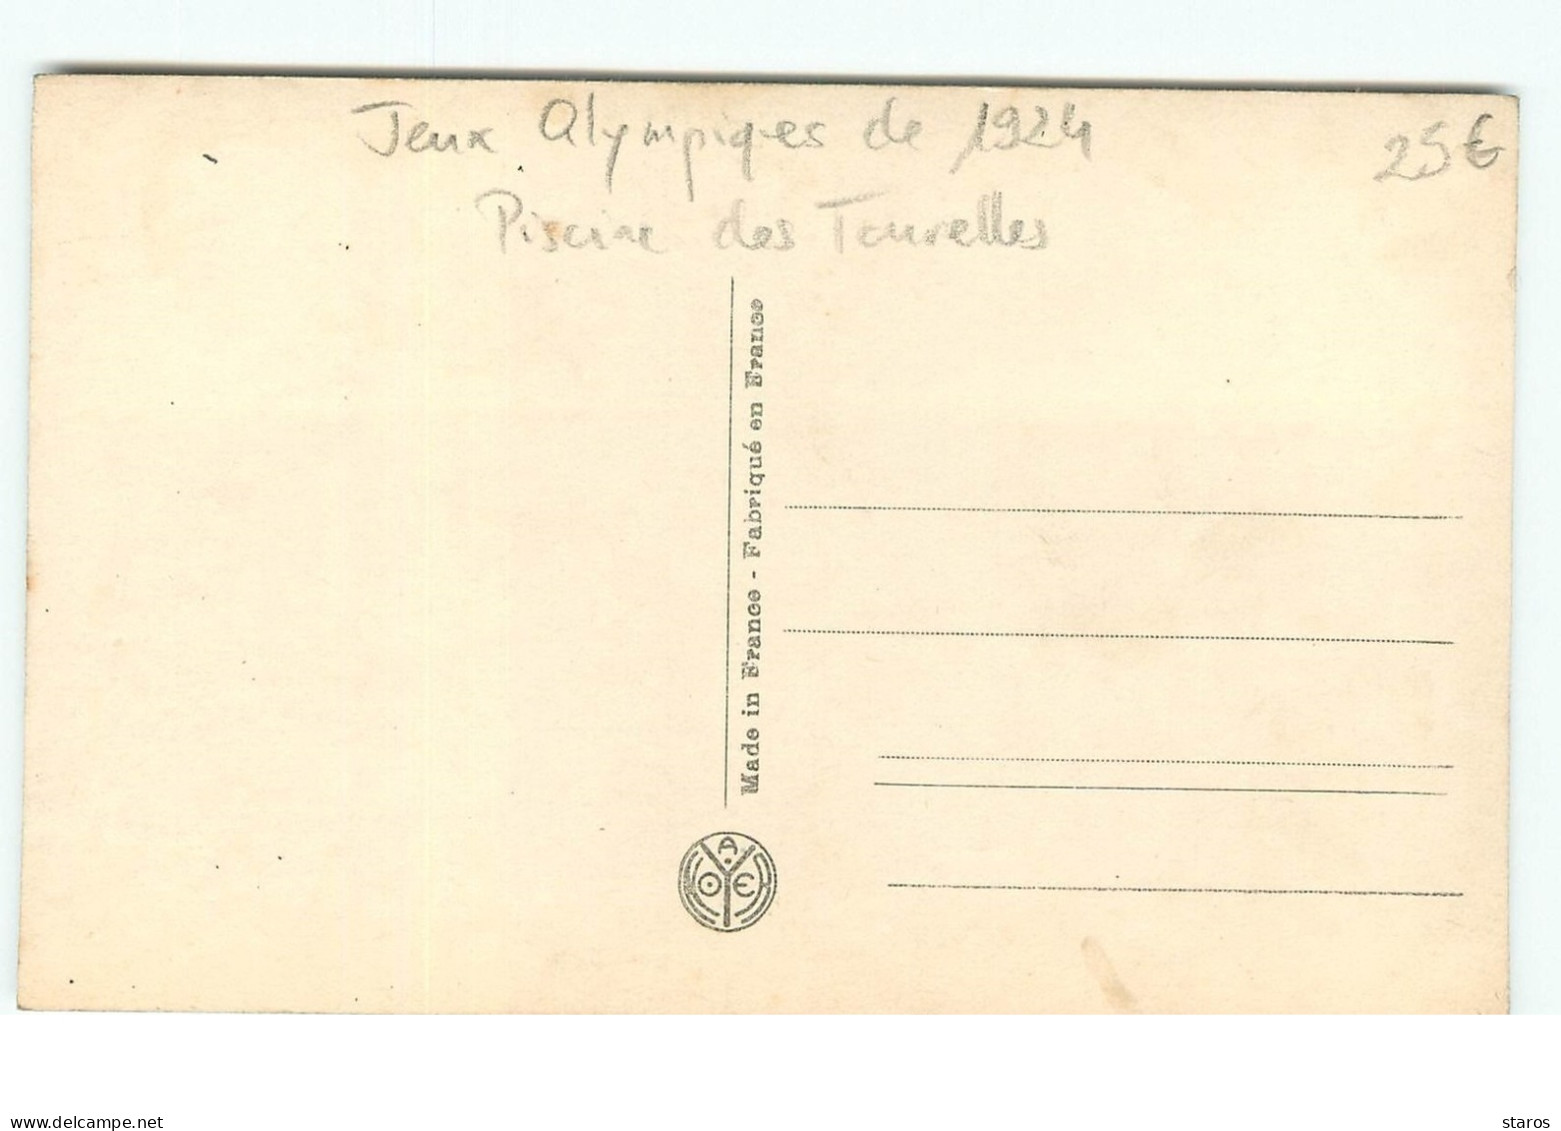 Jeux Olympiques 1924 - Florence Chambers Championne De Californie - Piscine Des Tourelles - PARIS - Jeux Olympiques